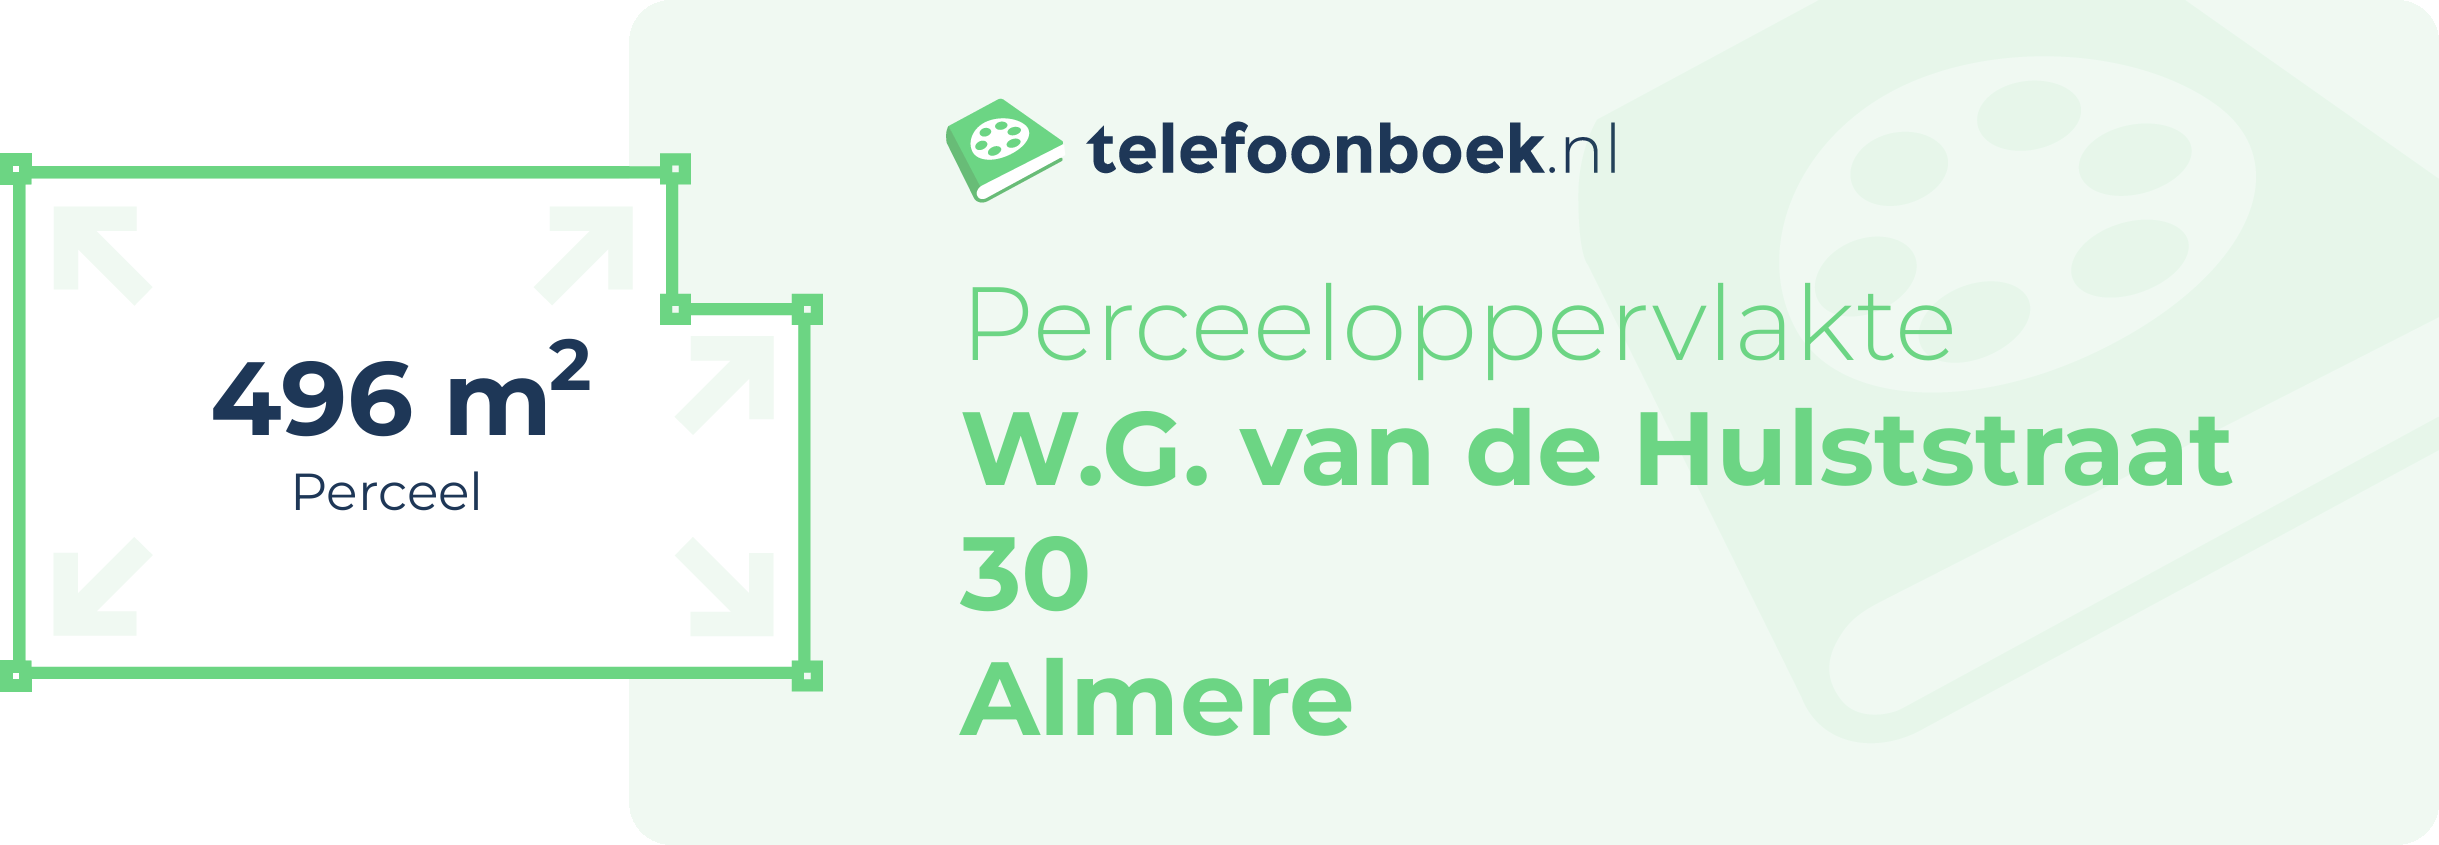 Perceeloppervlakte W.G. Van De Hulststraat 30 Almere